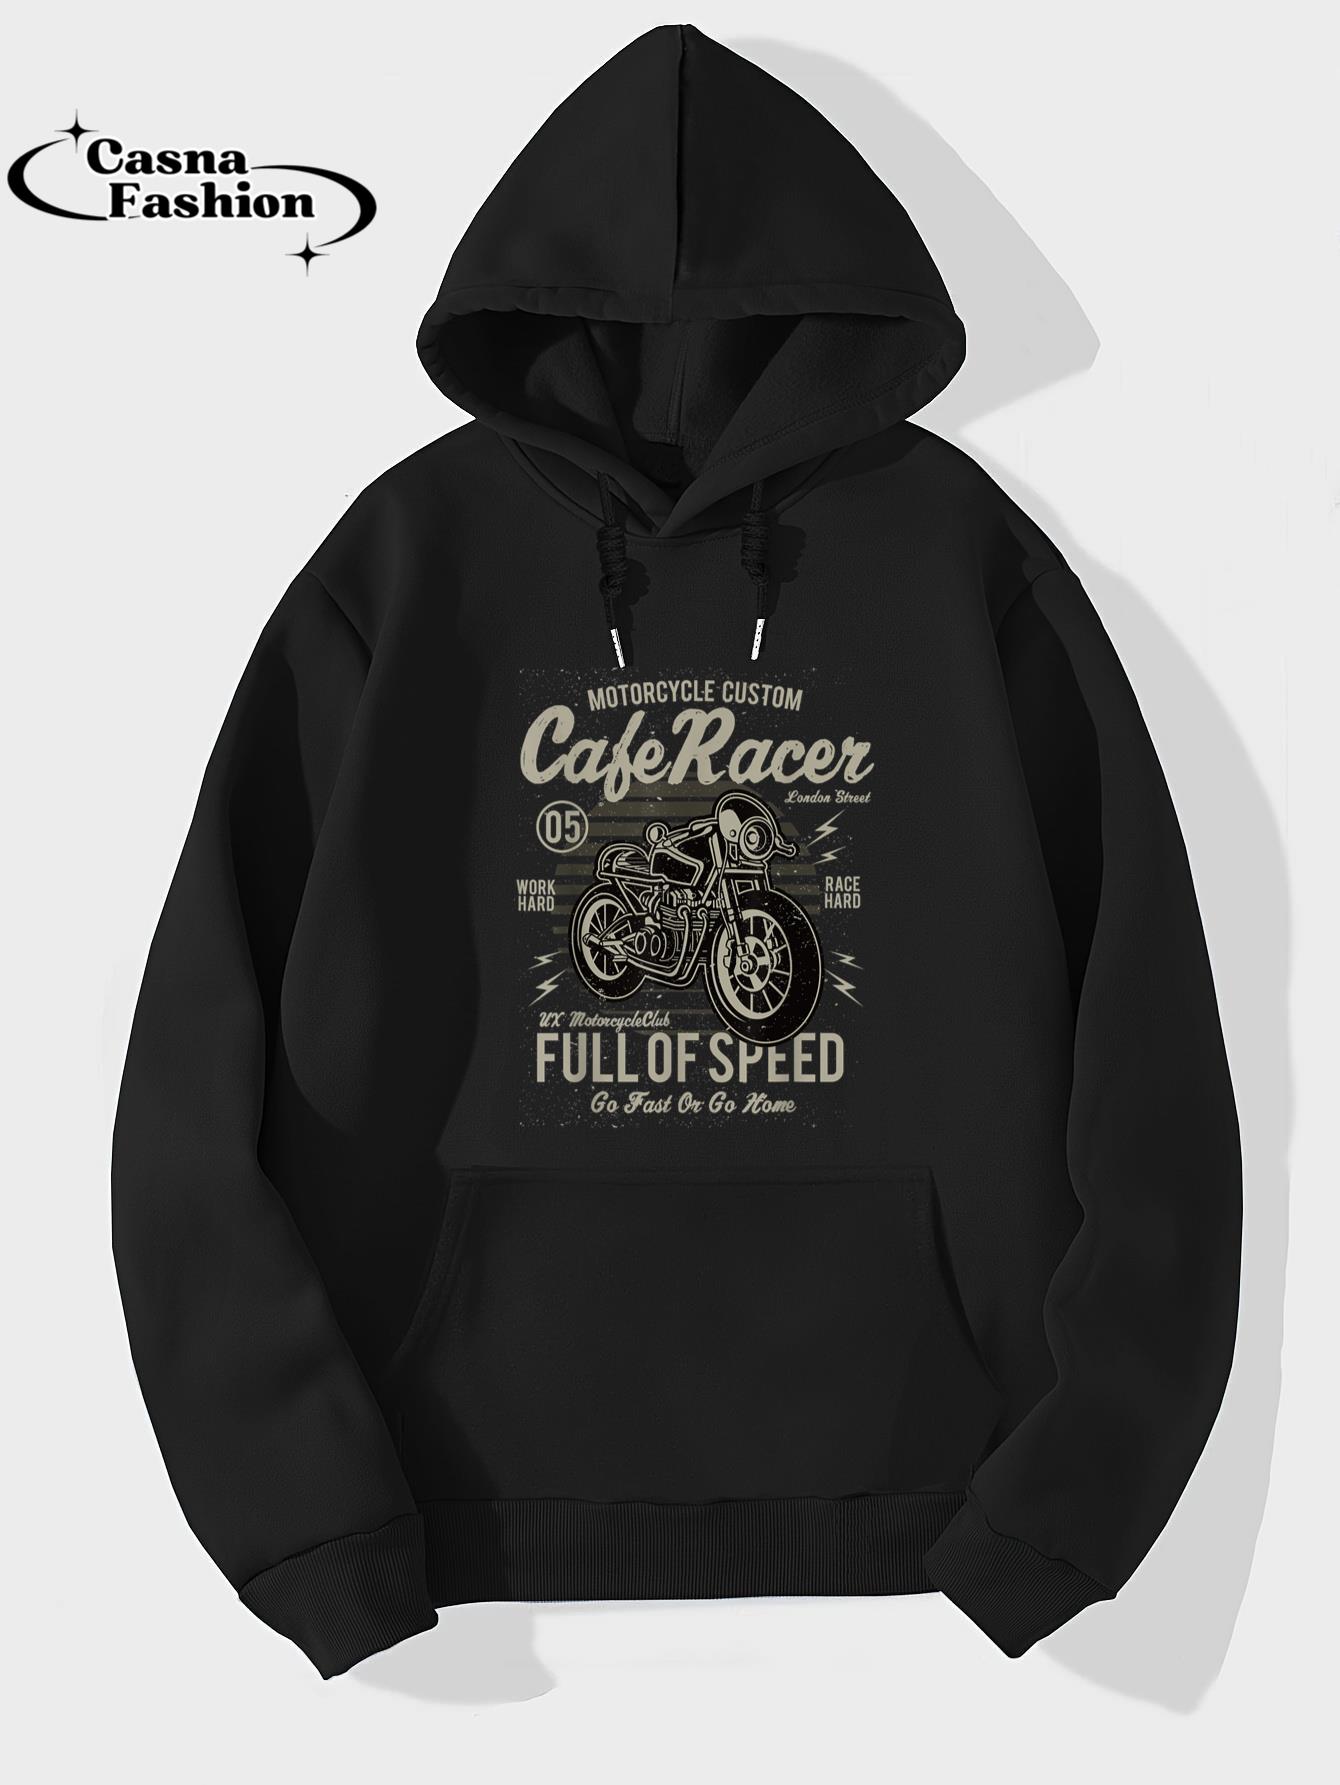 casnafashion_Hoodie_Vintage Motorcycle T Shirt Biker Cafe Racer Full Of Speed T-Shirt_hoodie_black hoodie